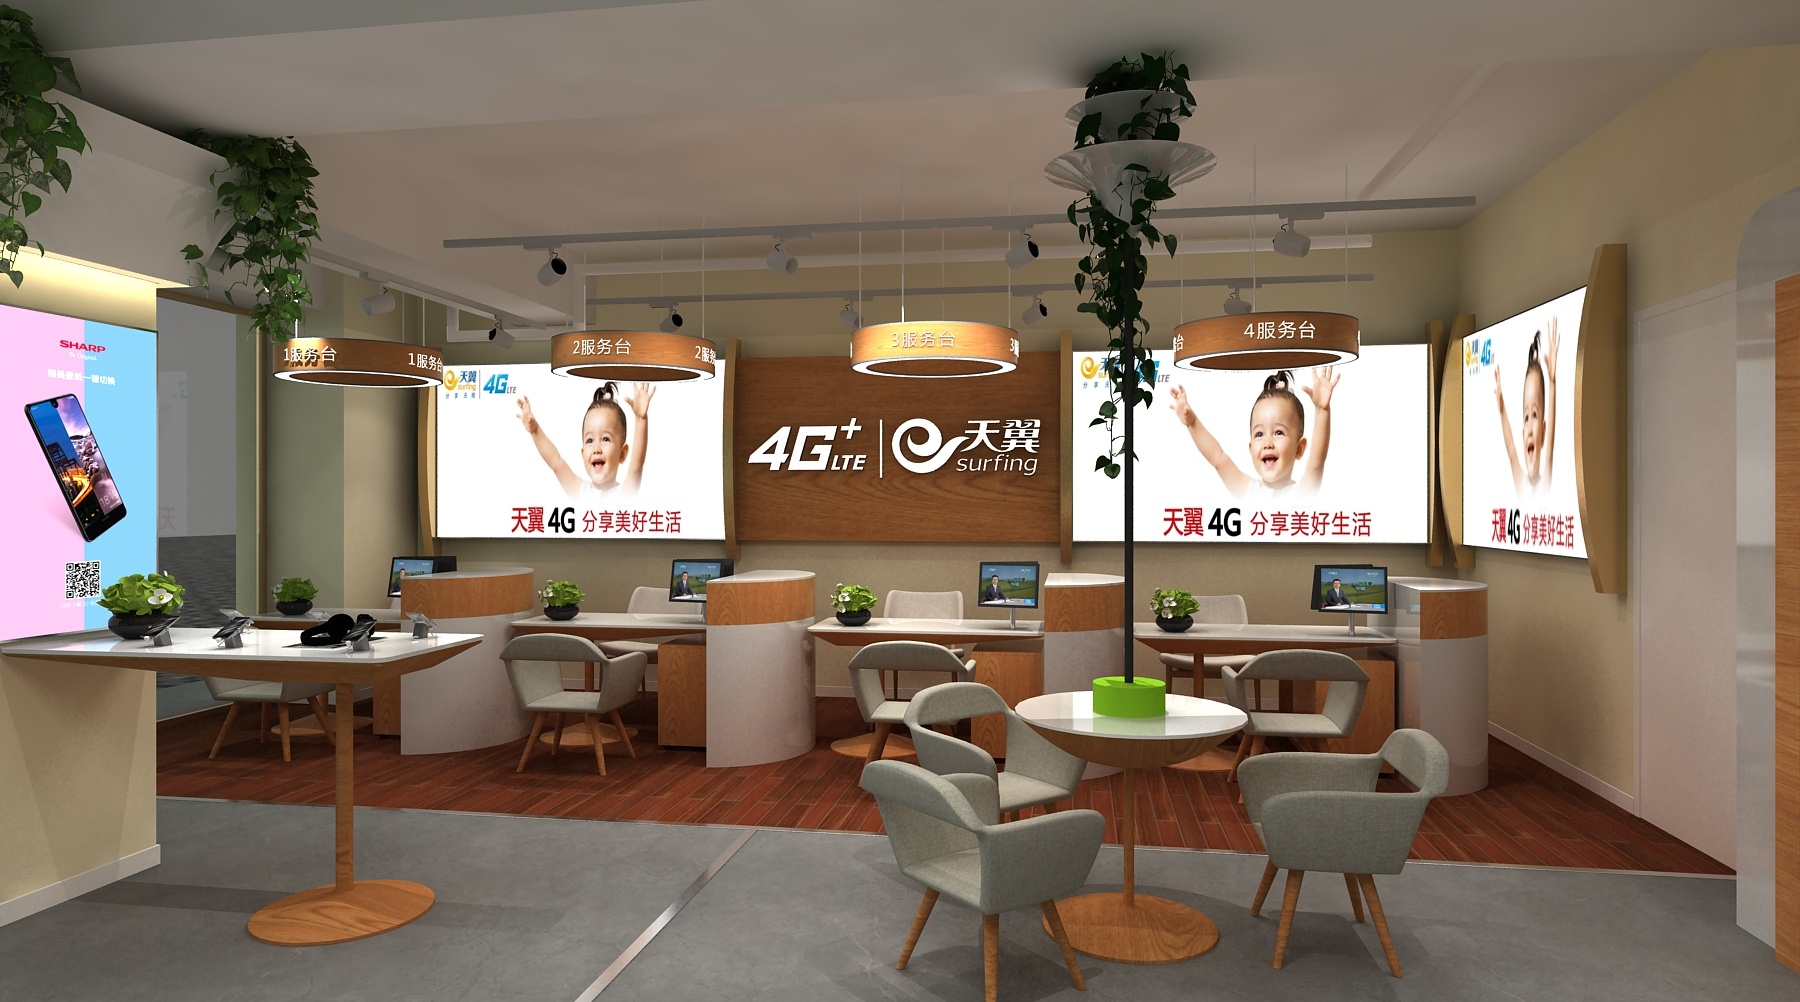 5G新时代，共赢未来 上海联通2020年合作伙伴大会隆重举行_通信世界网